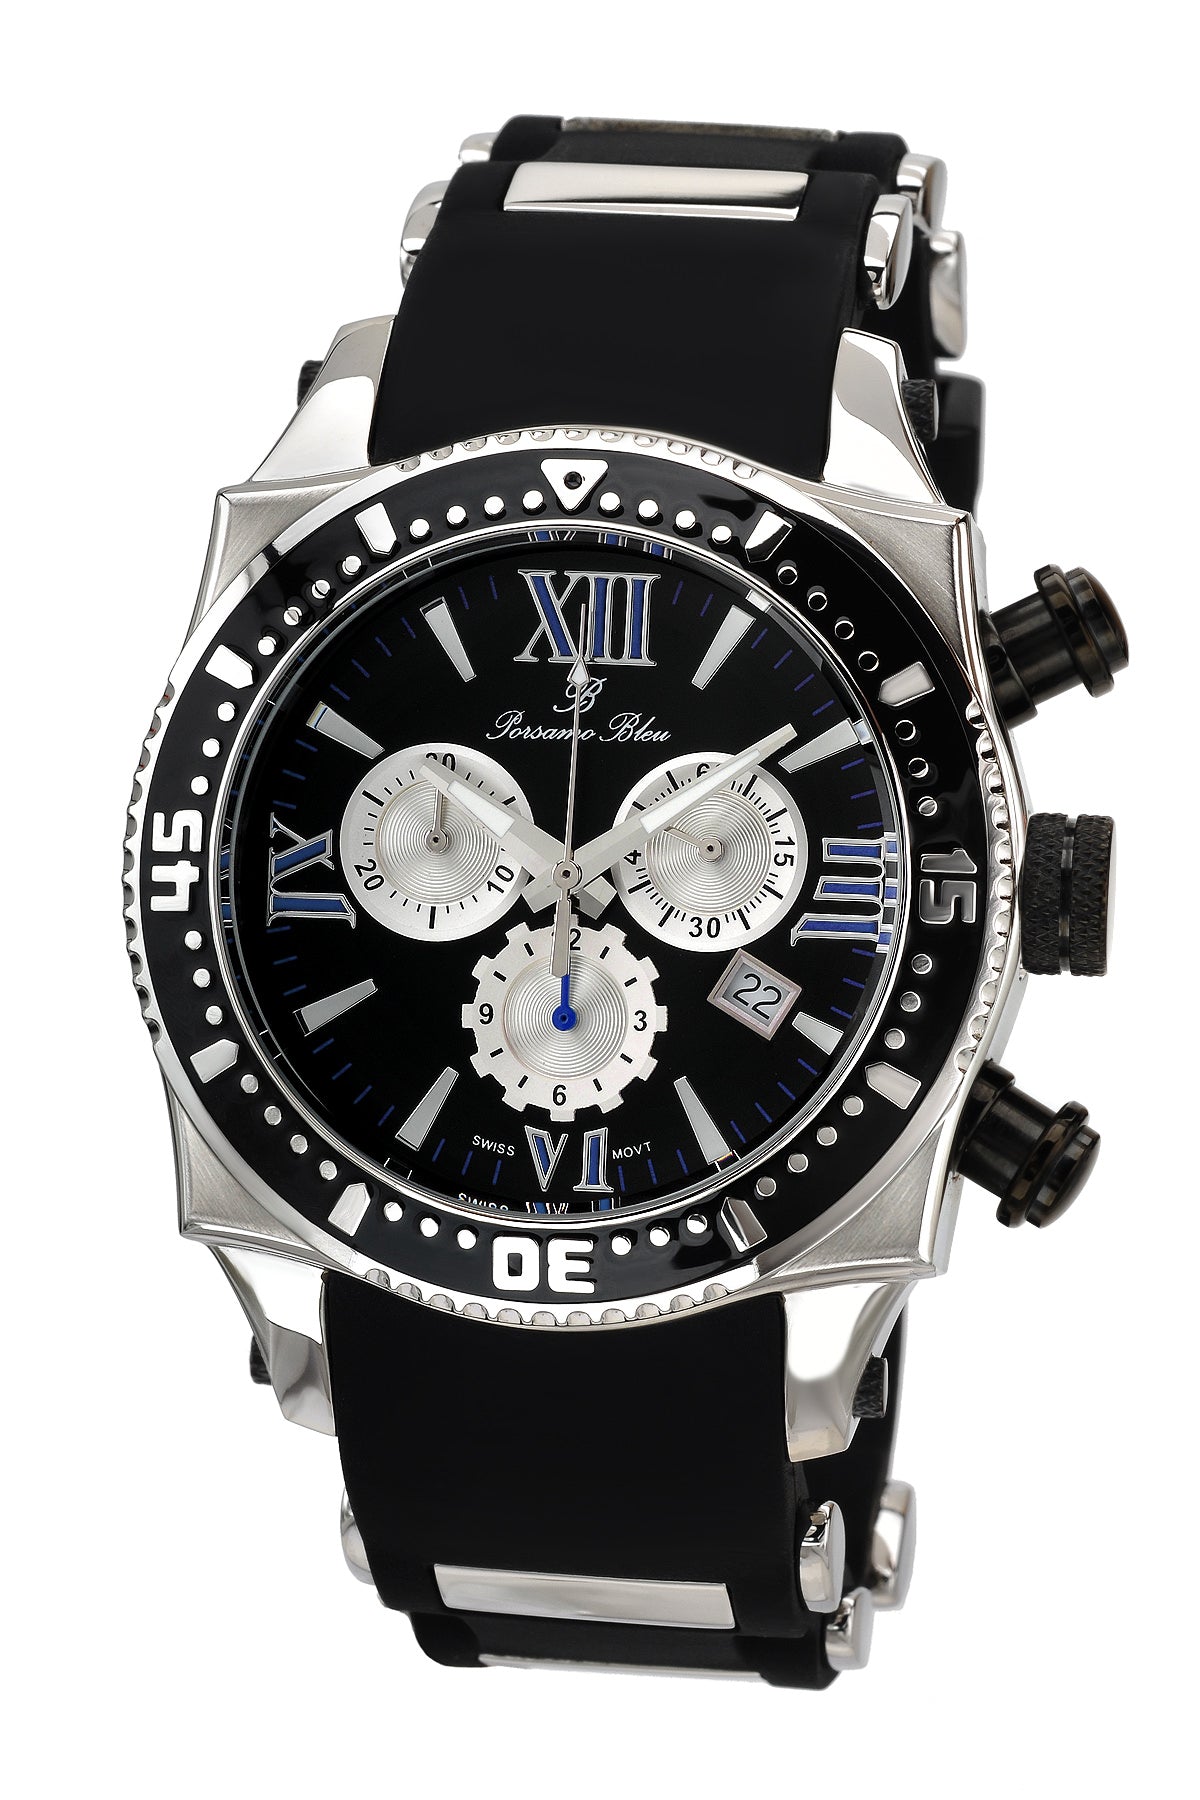 Porsamo Bleu Milan M luxury chronograph men's watch, silicone strap, silver, black, 034BMIR